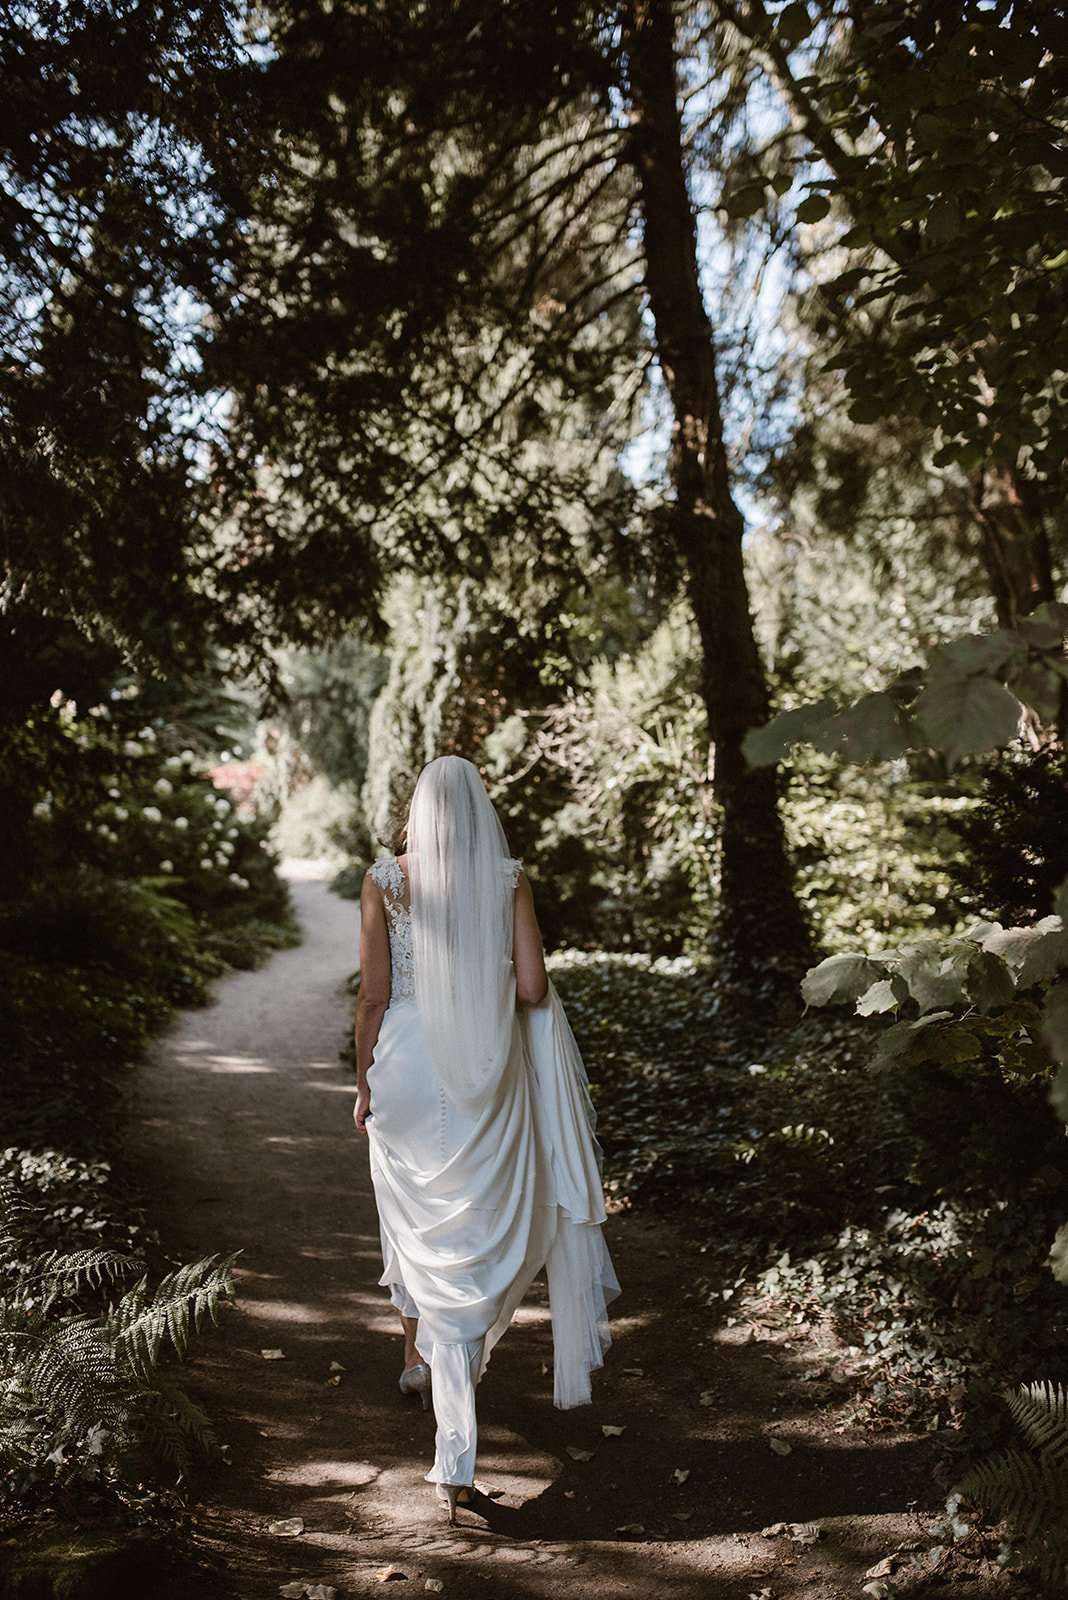 Bruid, jurk met lange sleep en sluier in het bos